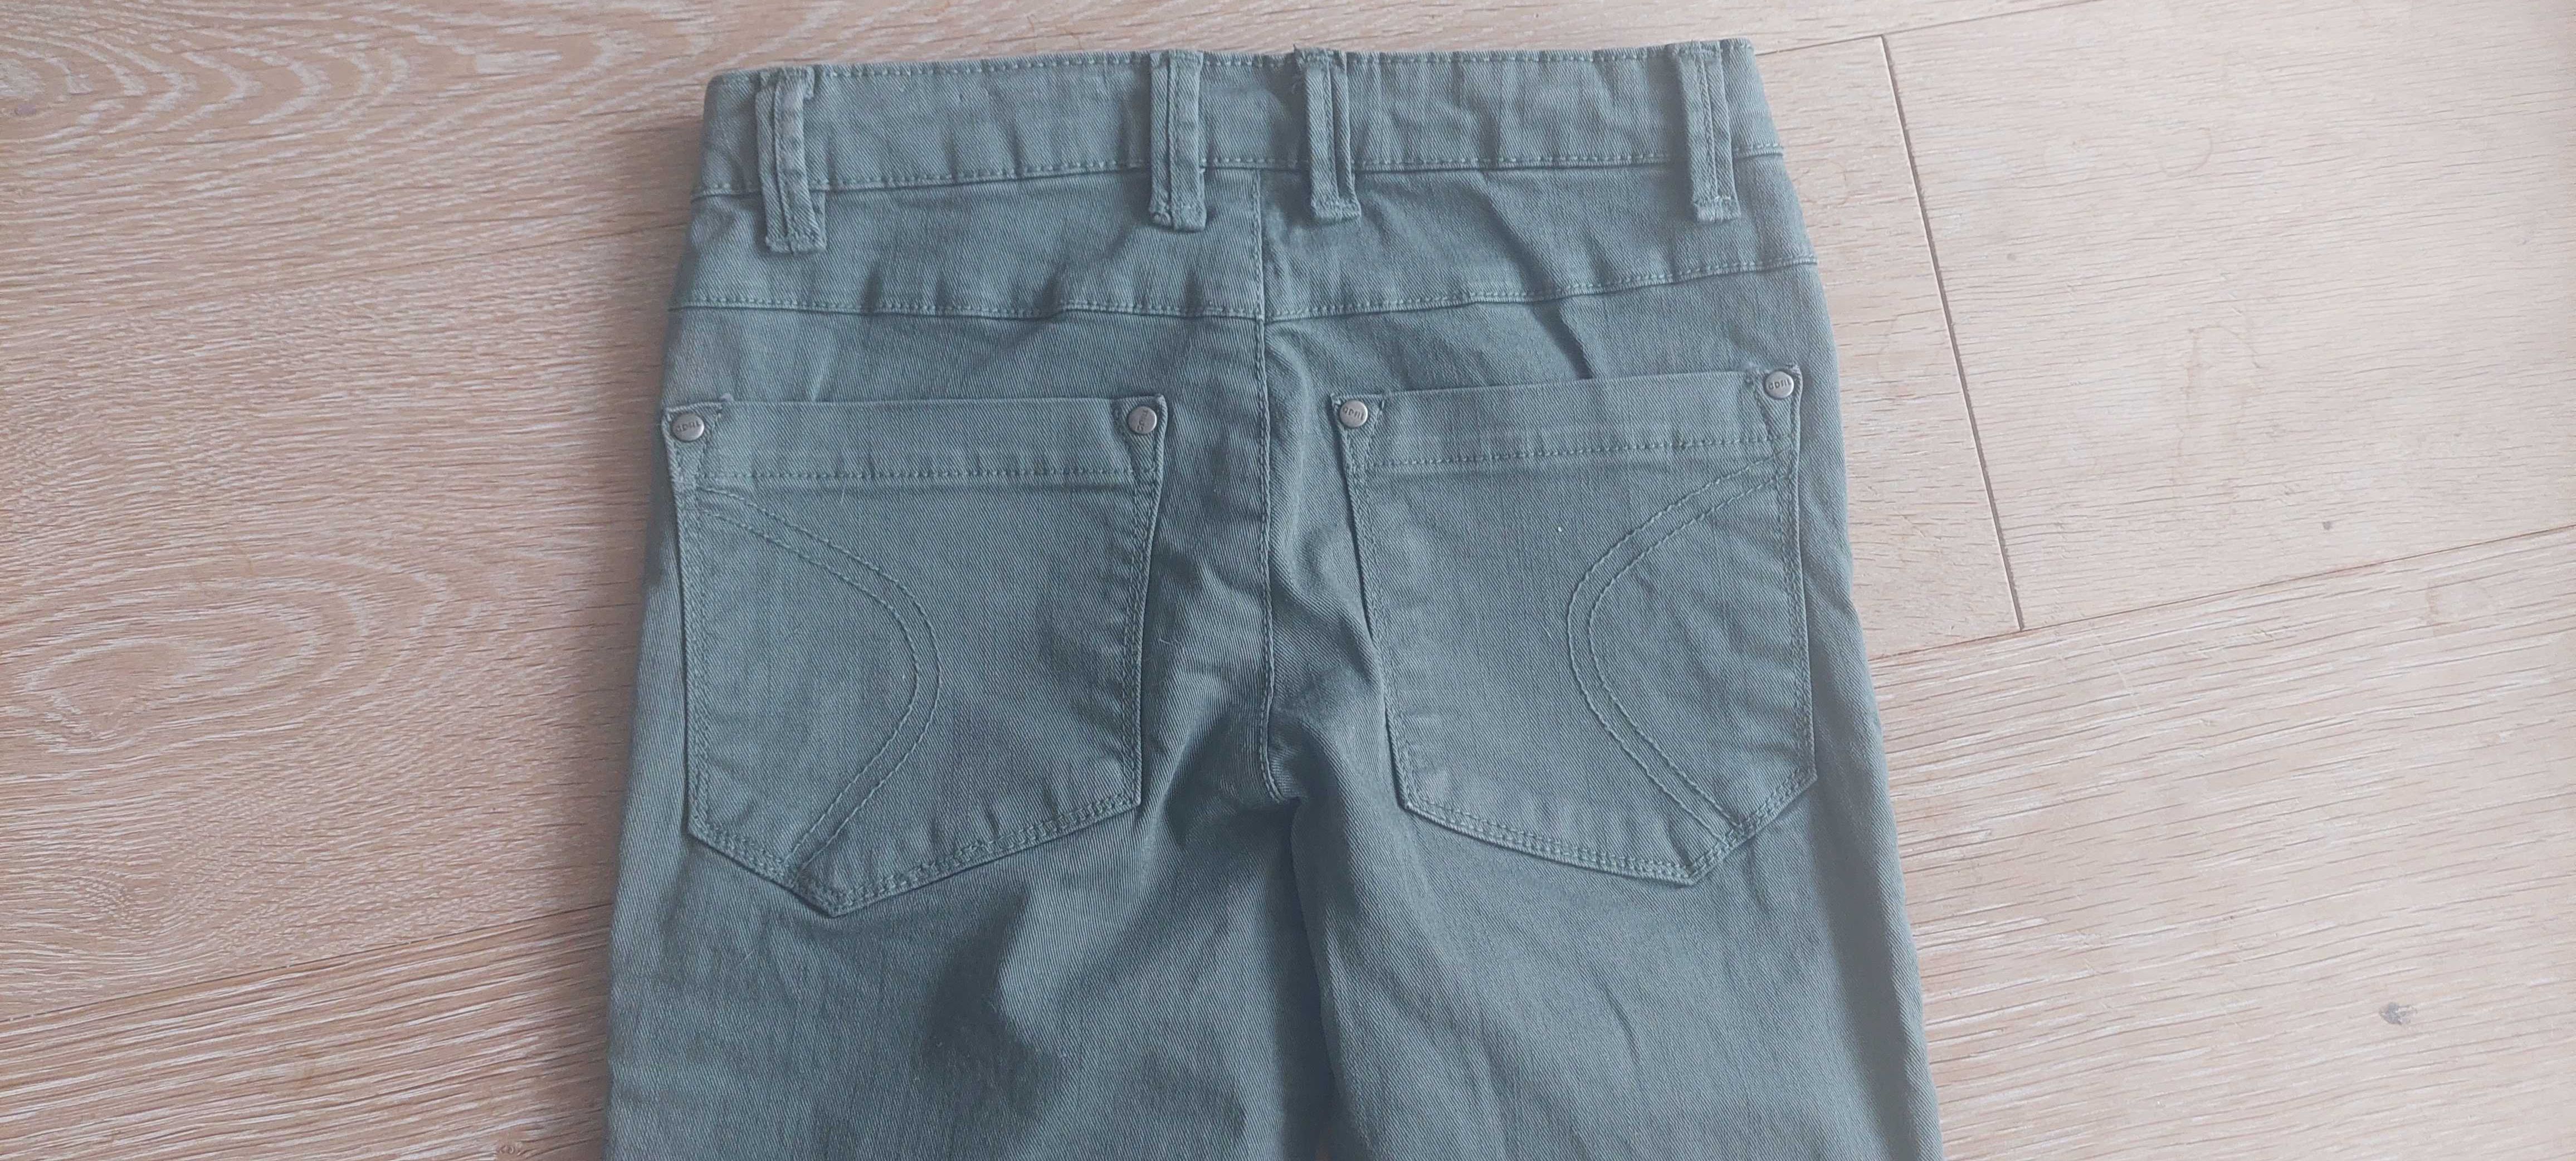 Spodnie jeansy chłopięce rozmiar 128